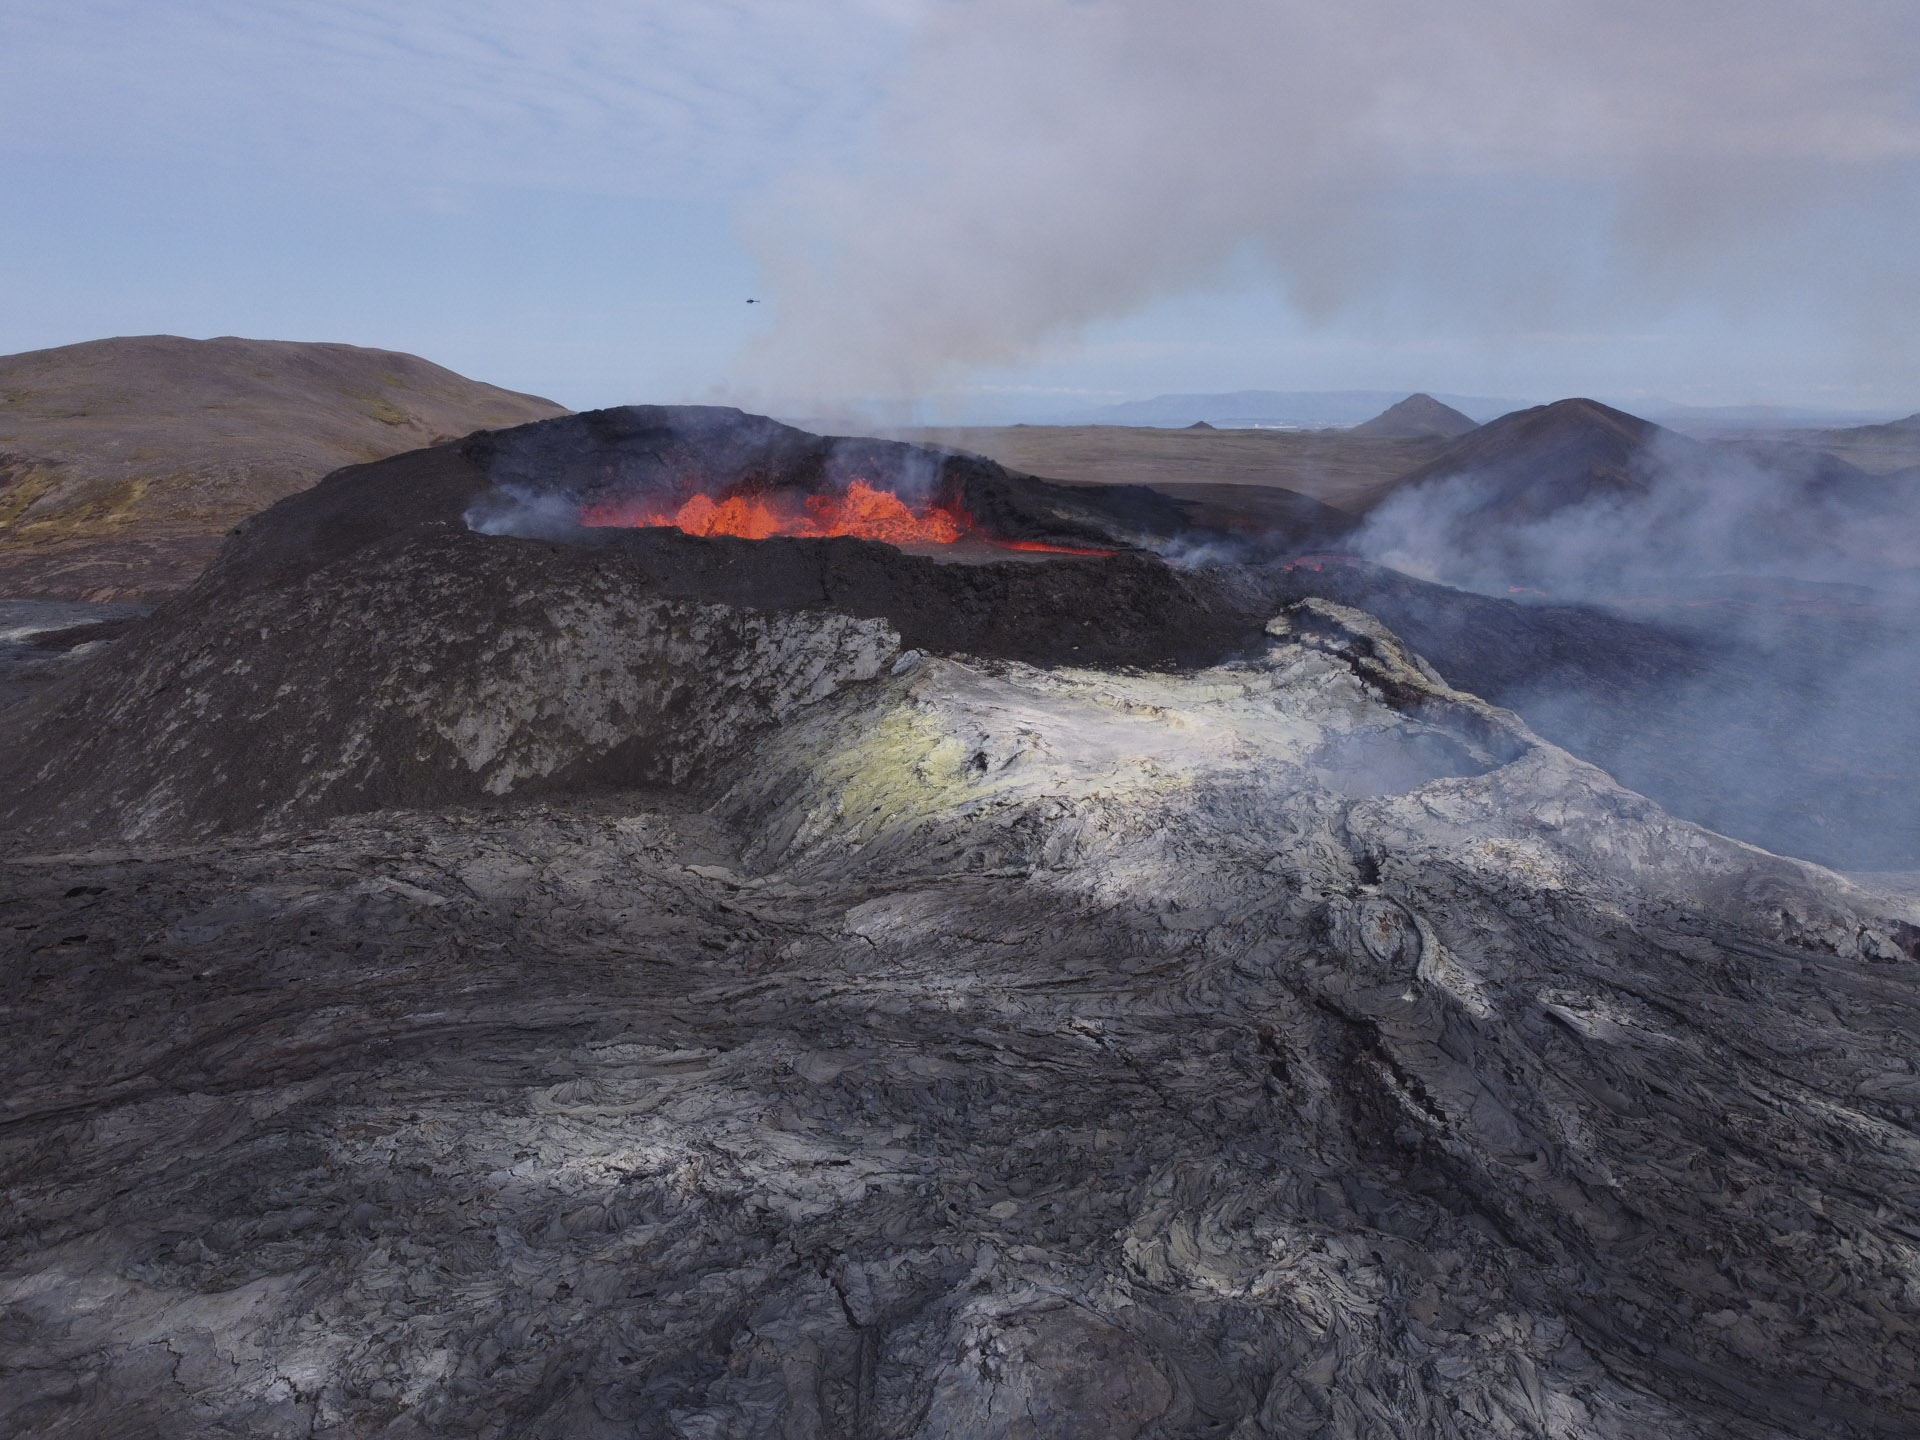 vulcano in eruzione, lava